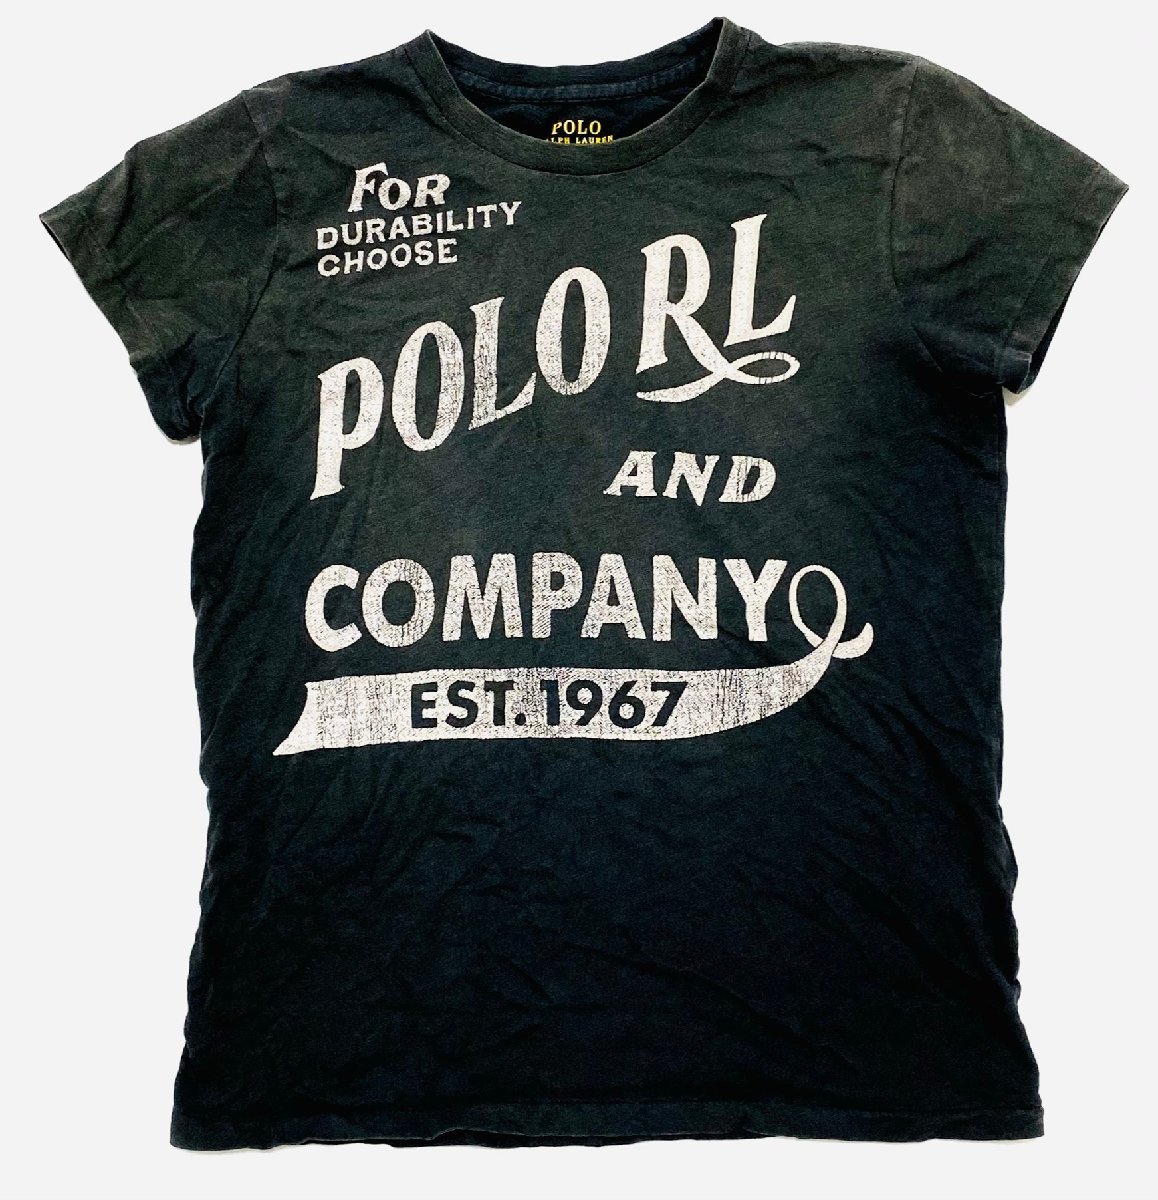 Polo Ralph Lauren ポロラルフローレン トップス カットソー Tシャツ 半袖 ロゴ ブラック 黒 スミクロ レディース sizeS シンプル_画像1